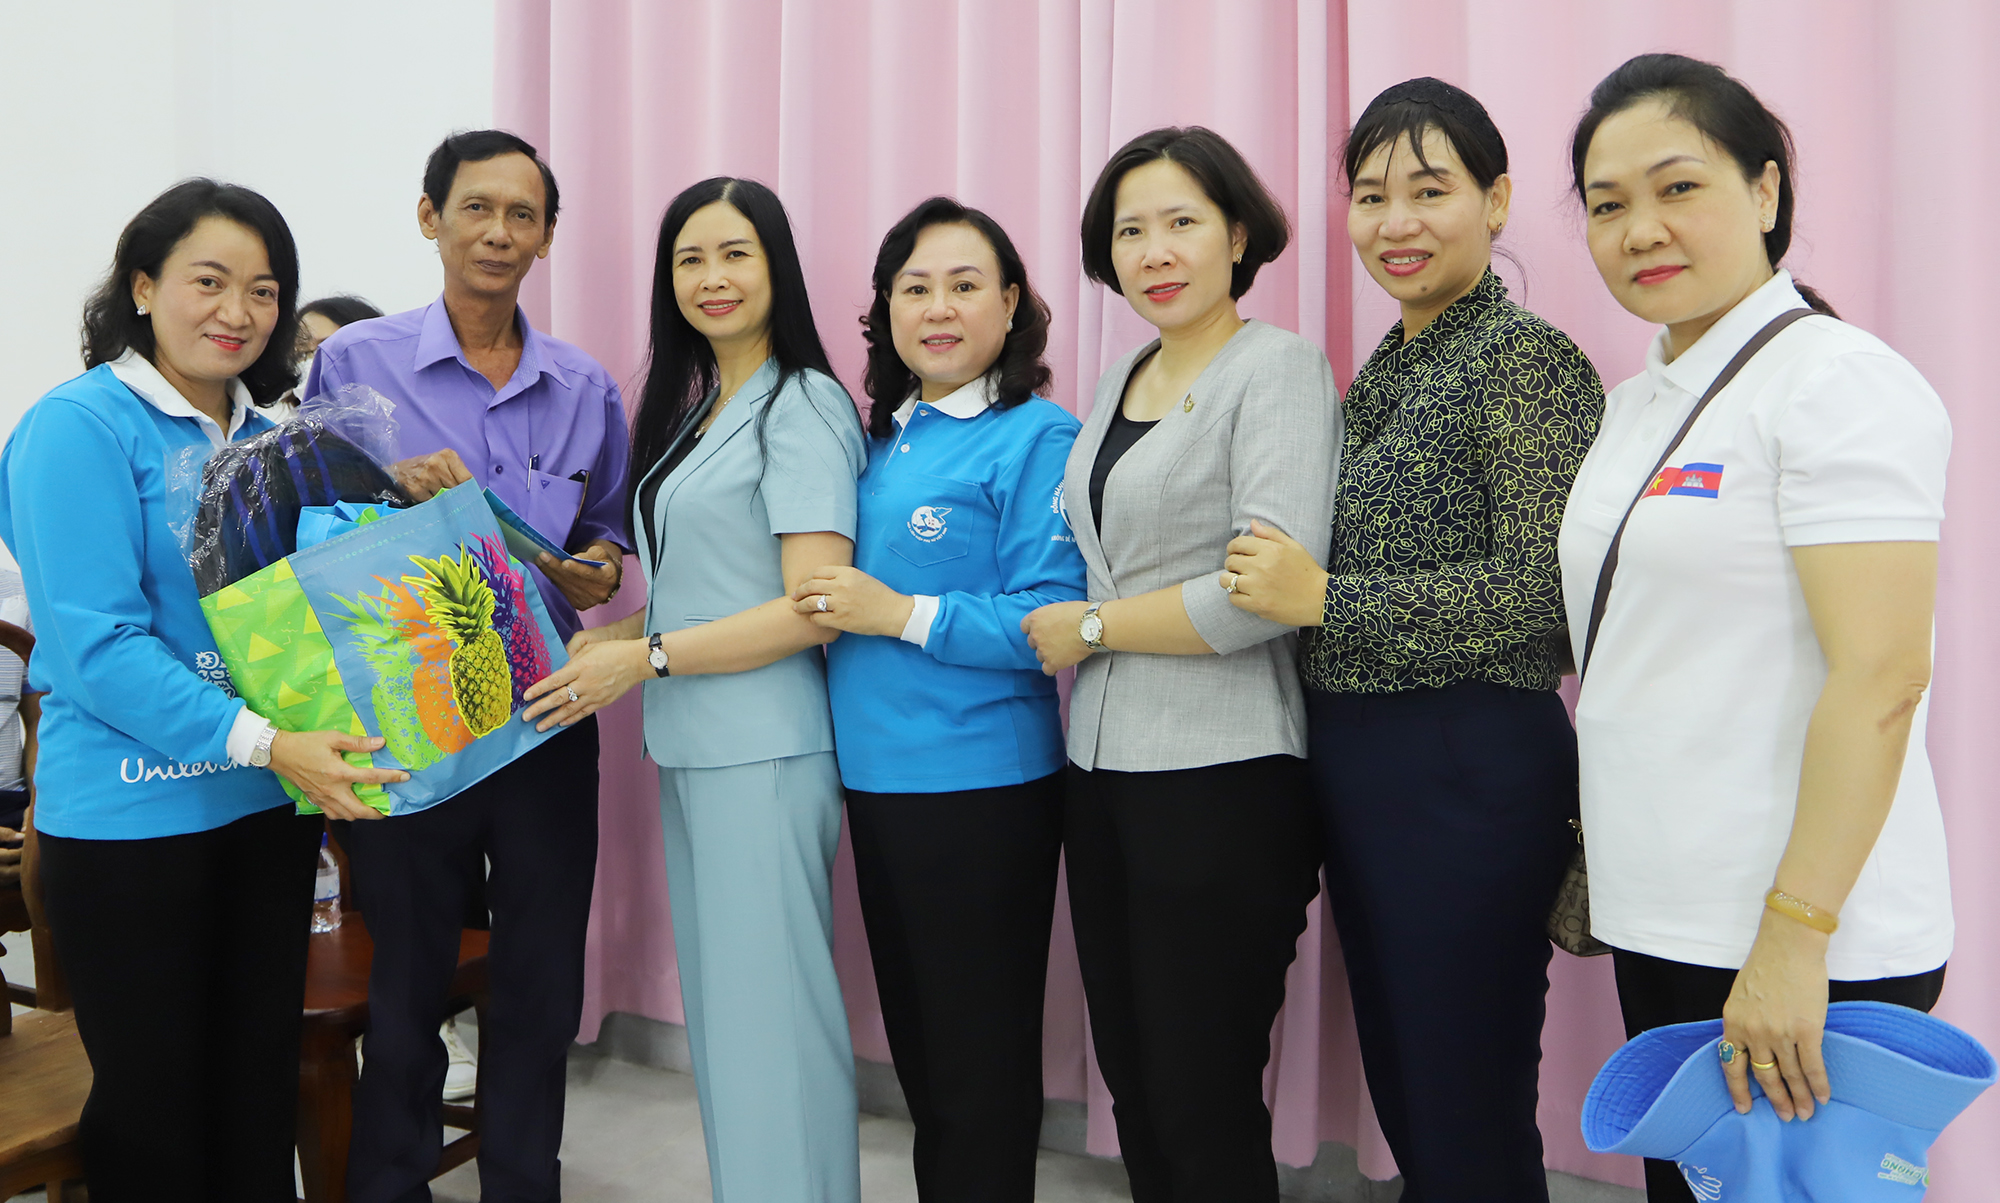 Cuộc gặp xúc động với những phụ nữ Campuchia từng hỗ trợ quân tình nguyện Việt Nam và người Việt sinh sống tại tỉnh Kampot  - Ảnh 6.